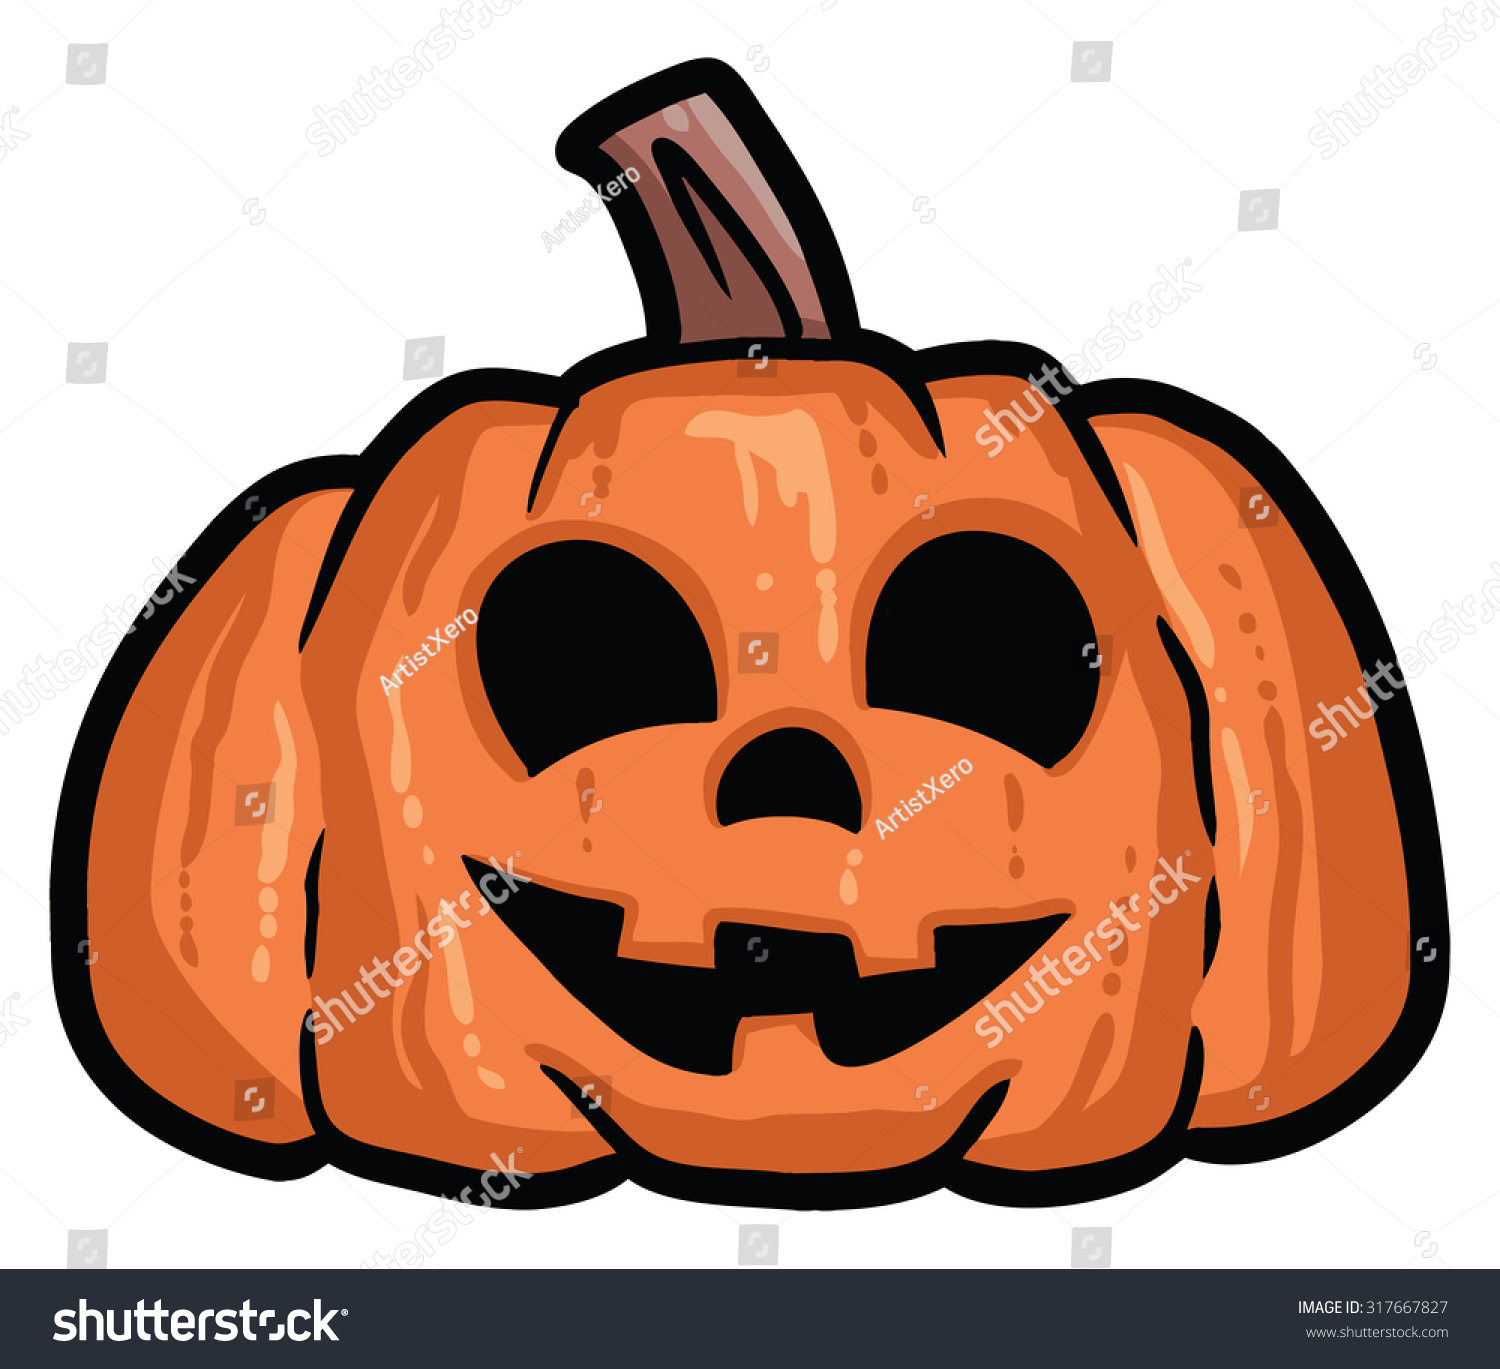 Halloween Pumpkins Stock Vector 317667827 - Shutterstock